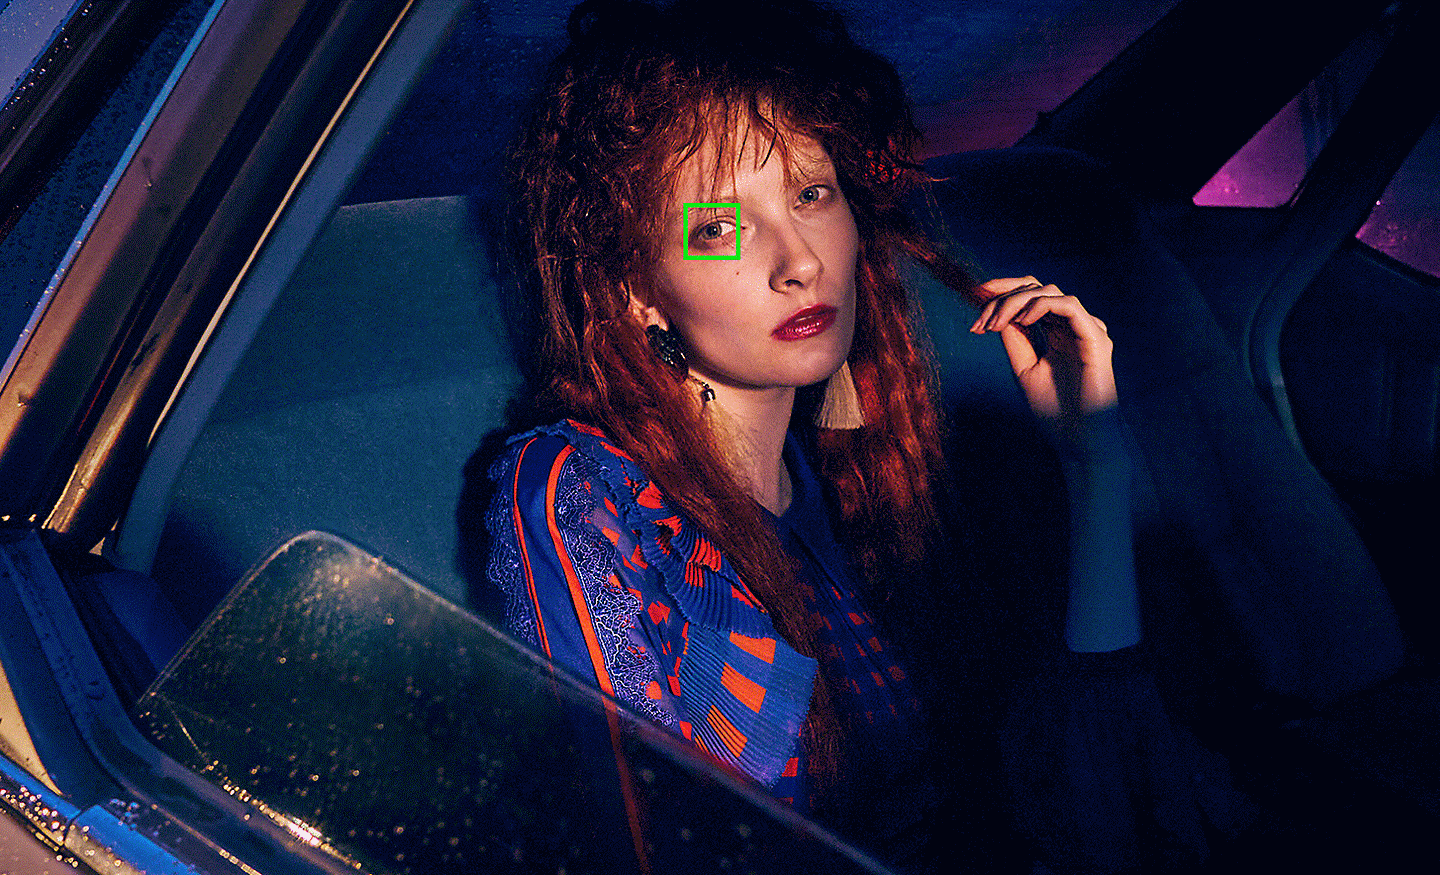 Snímek ženy v autě pořízený za slabého osvětlení se zeleným bodem automatického ostření překrývajícím její oko